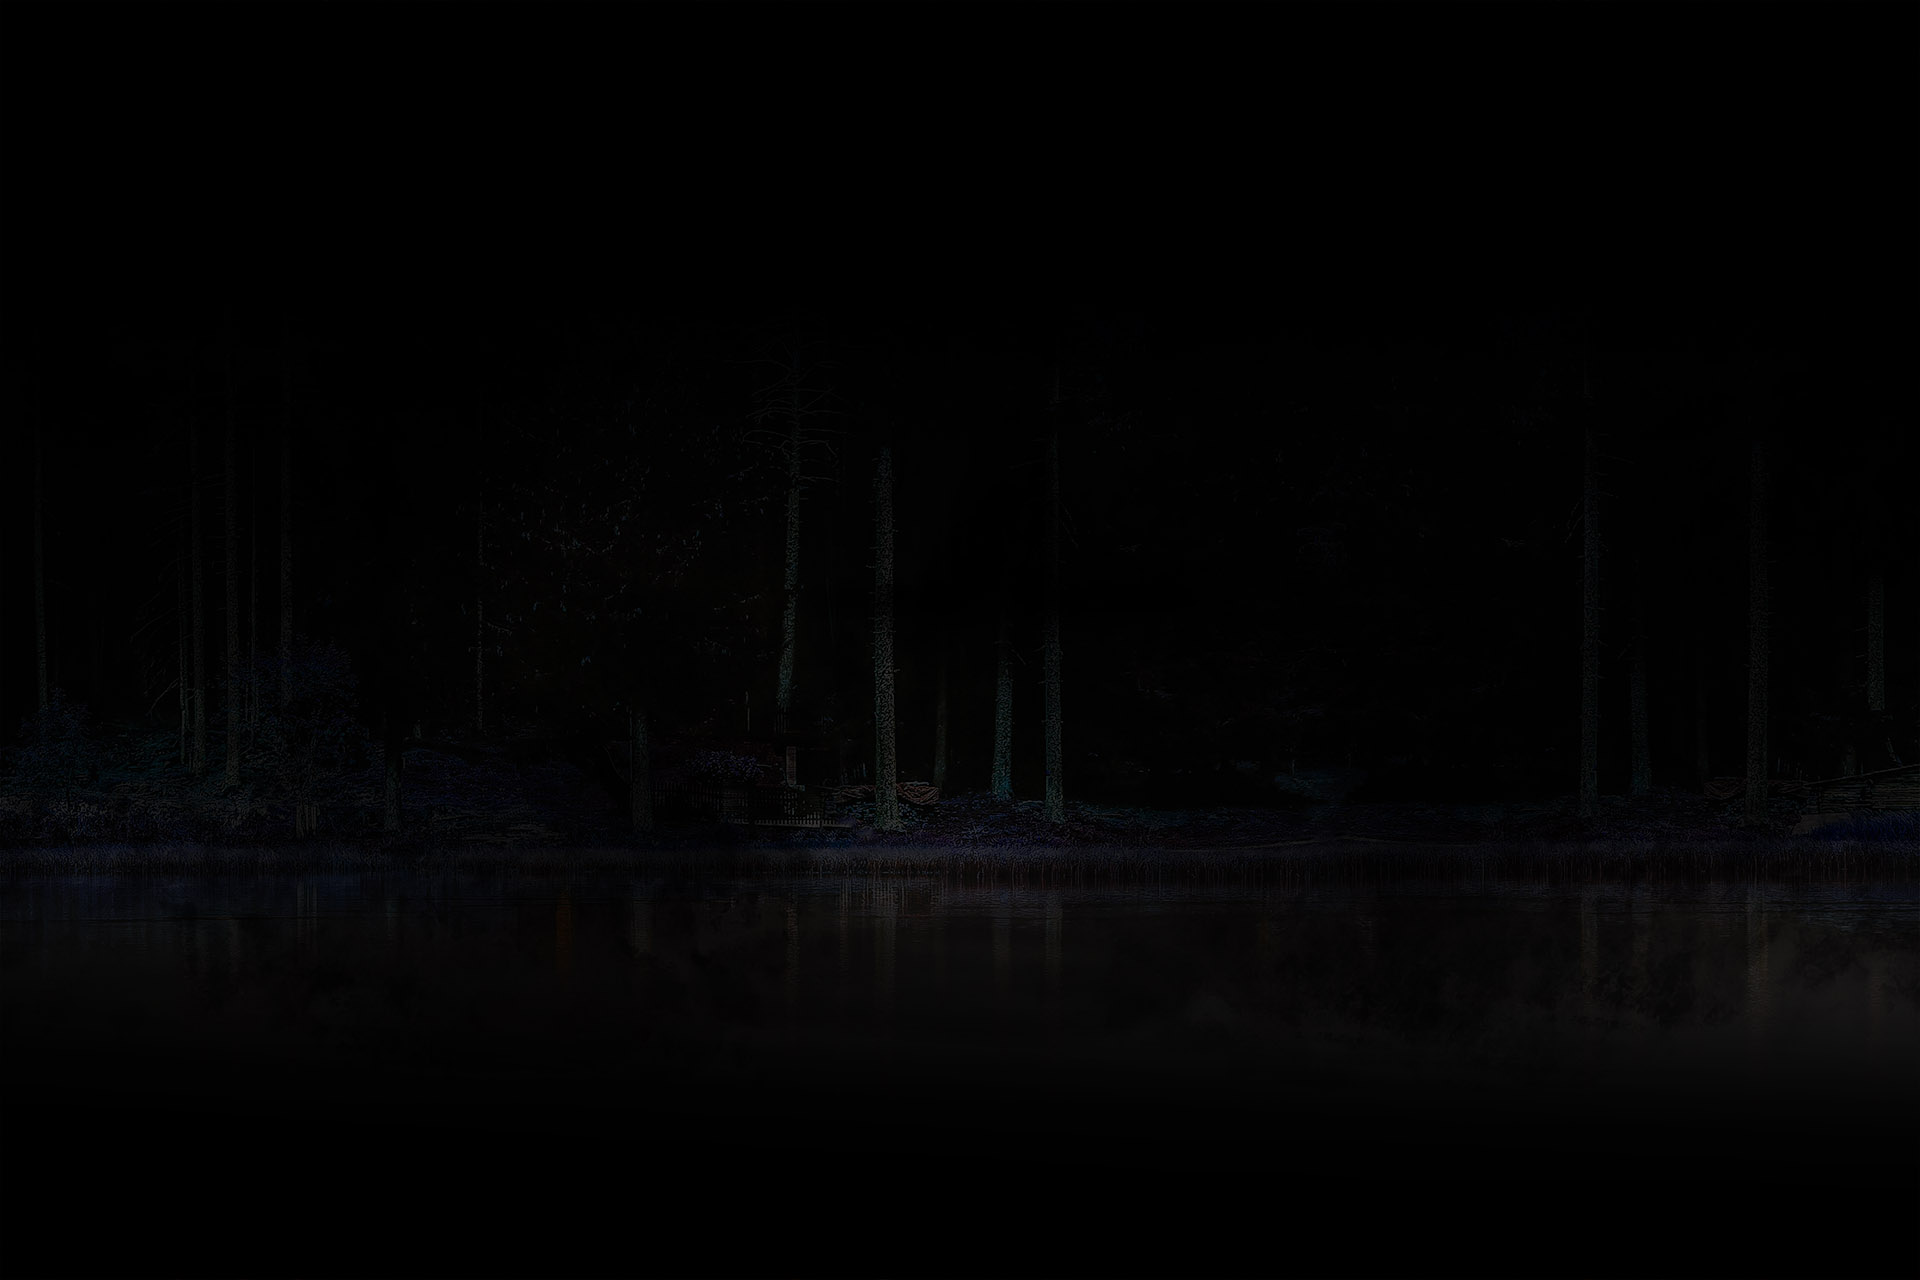 Dark lake